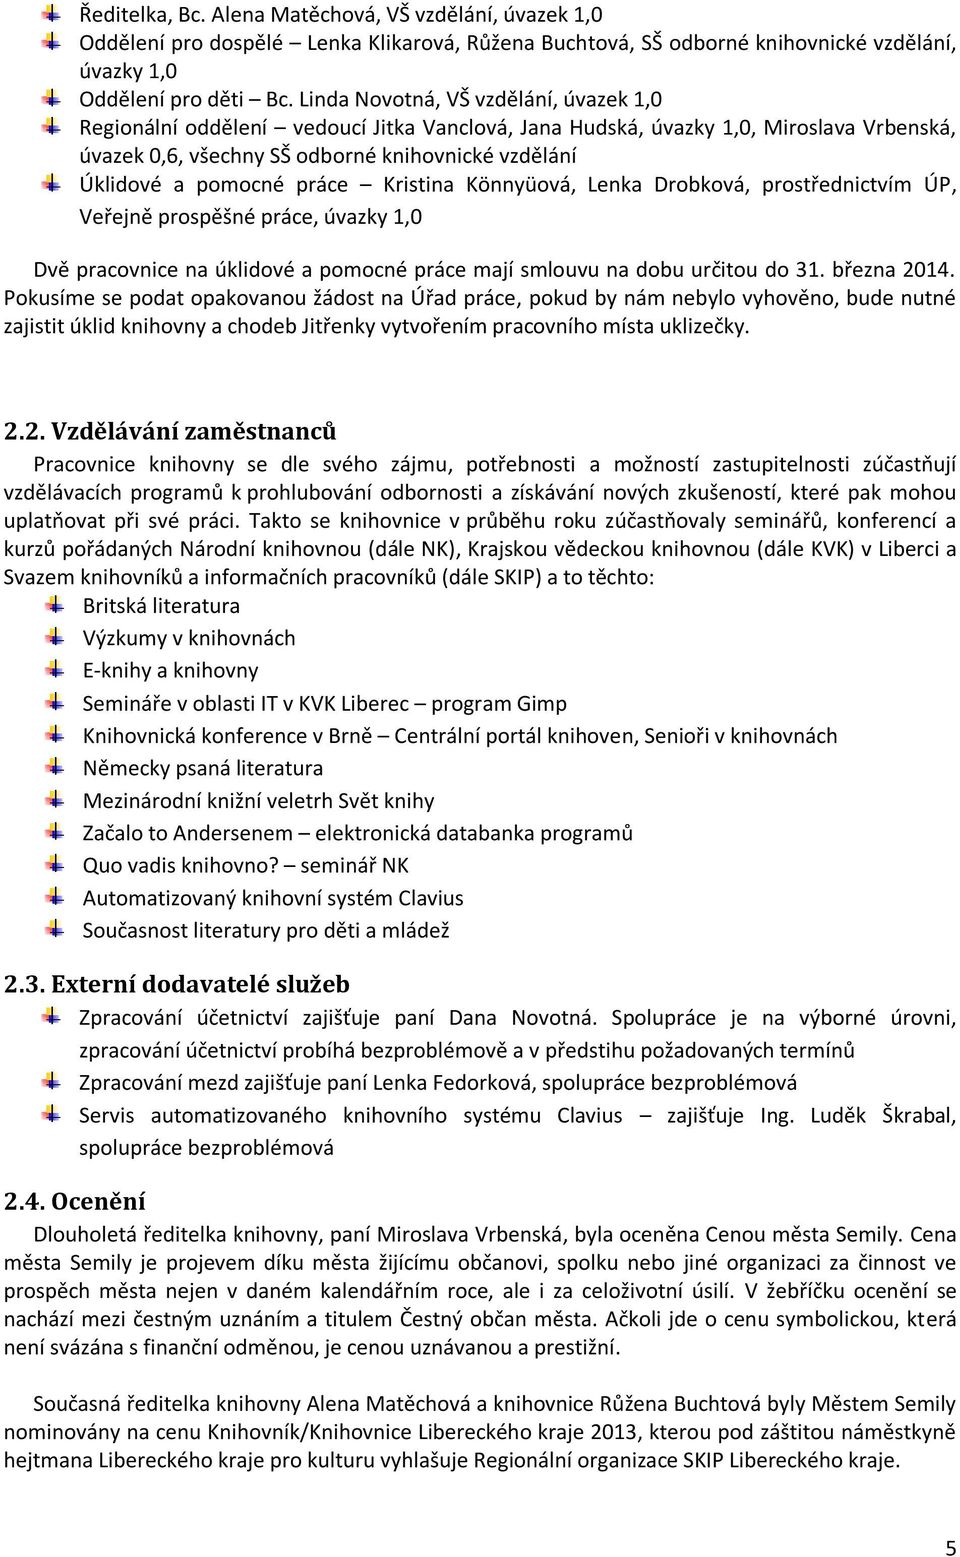 práce Kristina Könnyüová, Lenka Drobková, prostřednictvím ÚP, Veřejně prospěšné práce, úvazky 1,0 Dvě pracovnice na úklidové a pomocné práce mají smlouvu na dobu určitou do 31. března 2014.